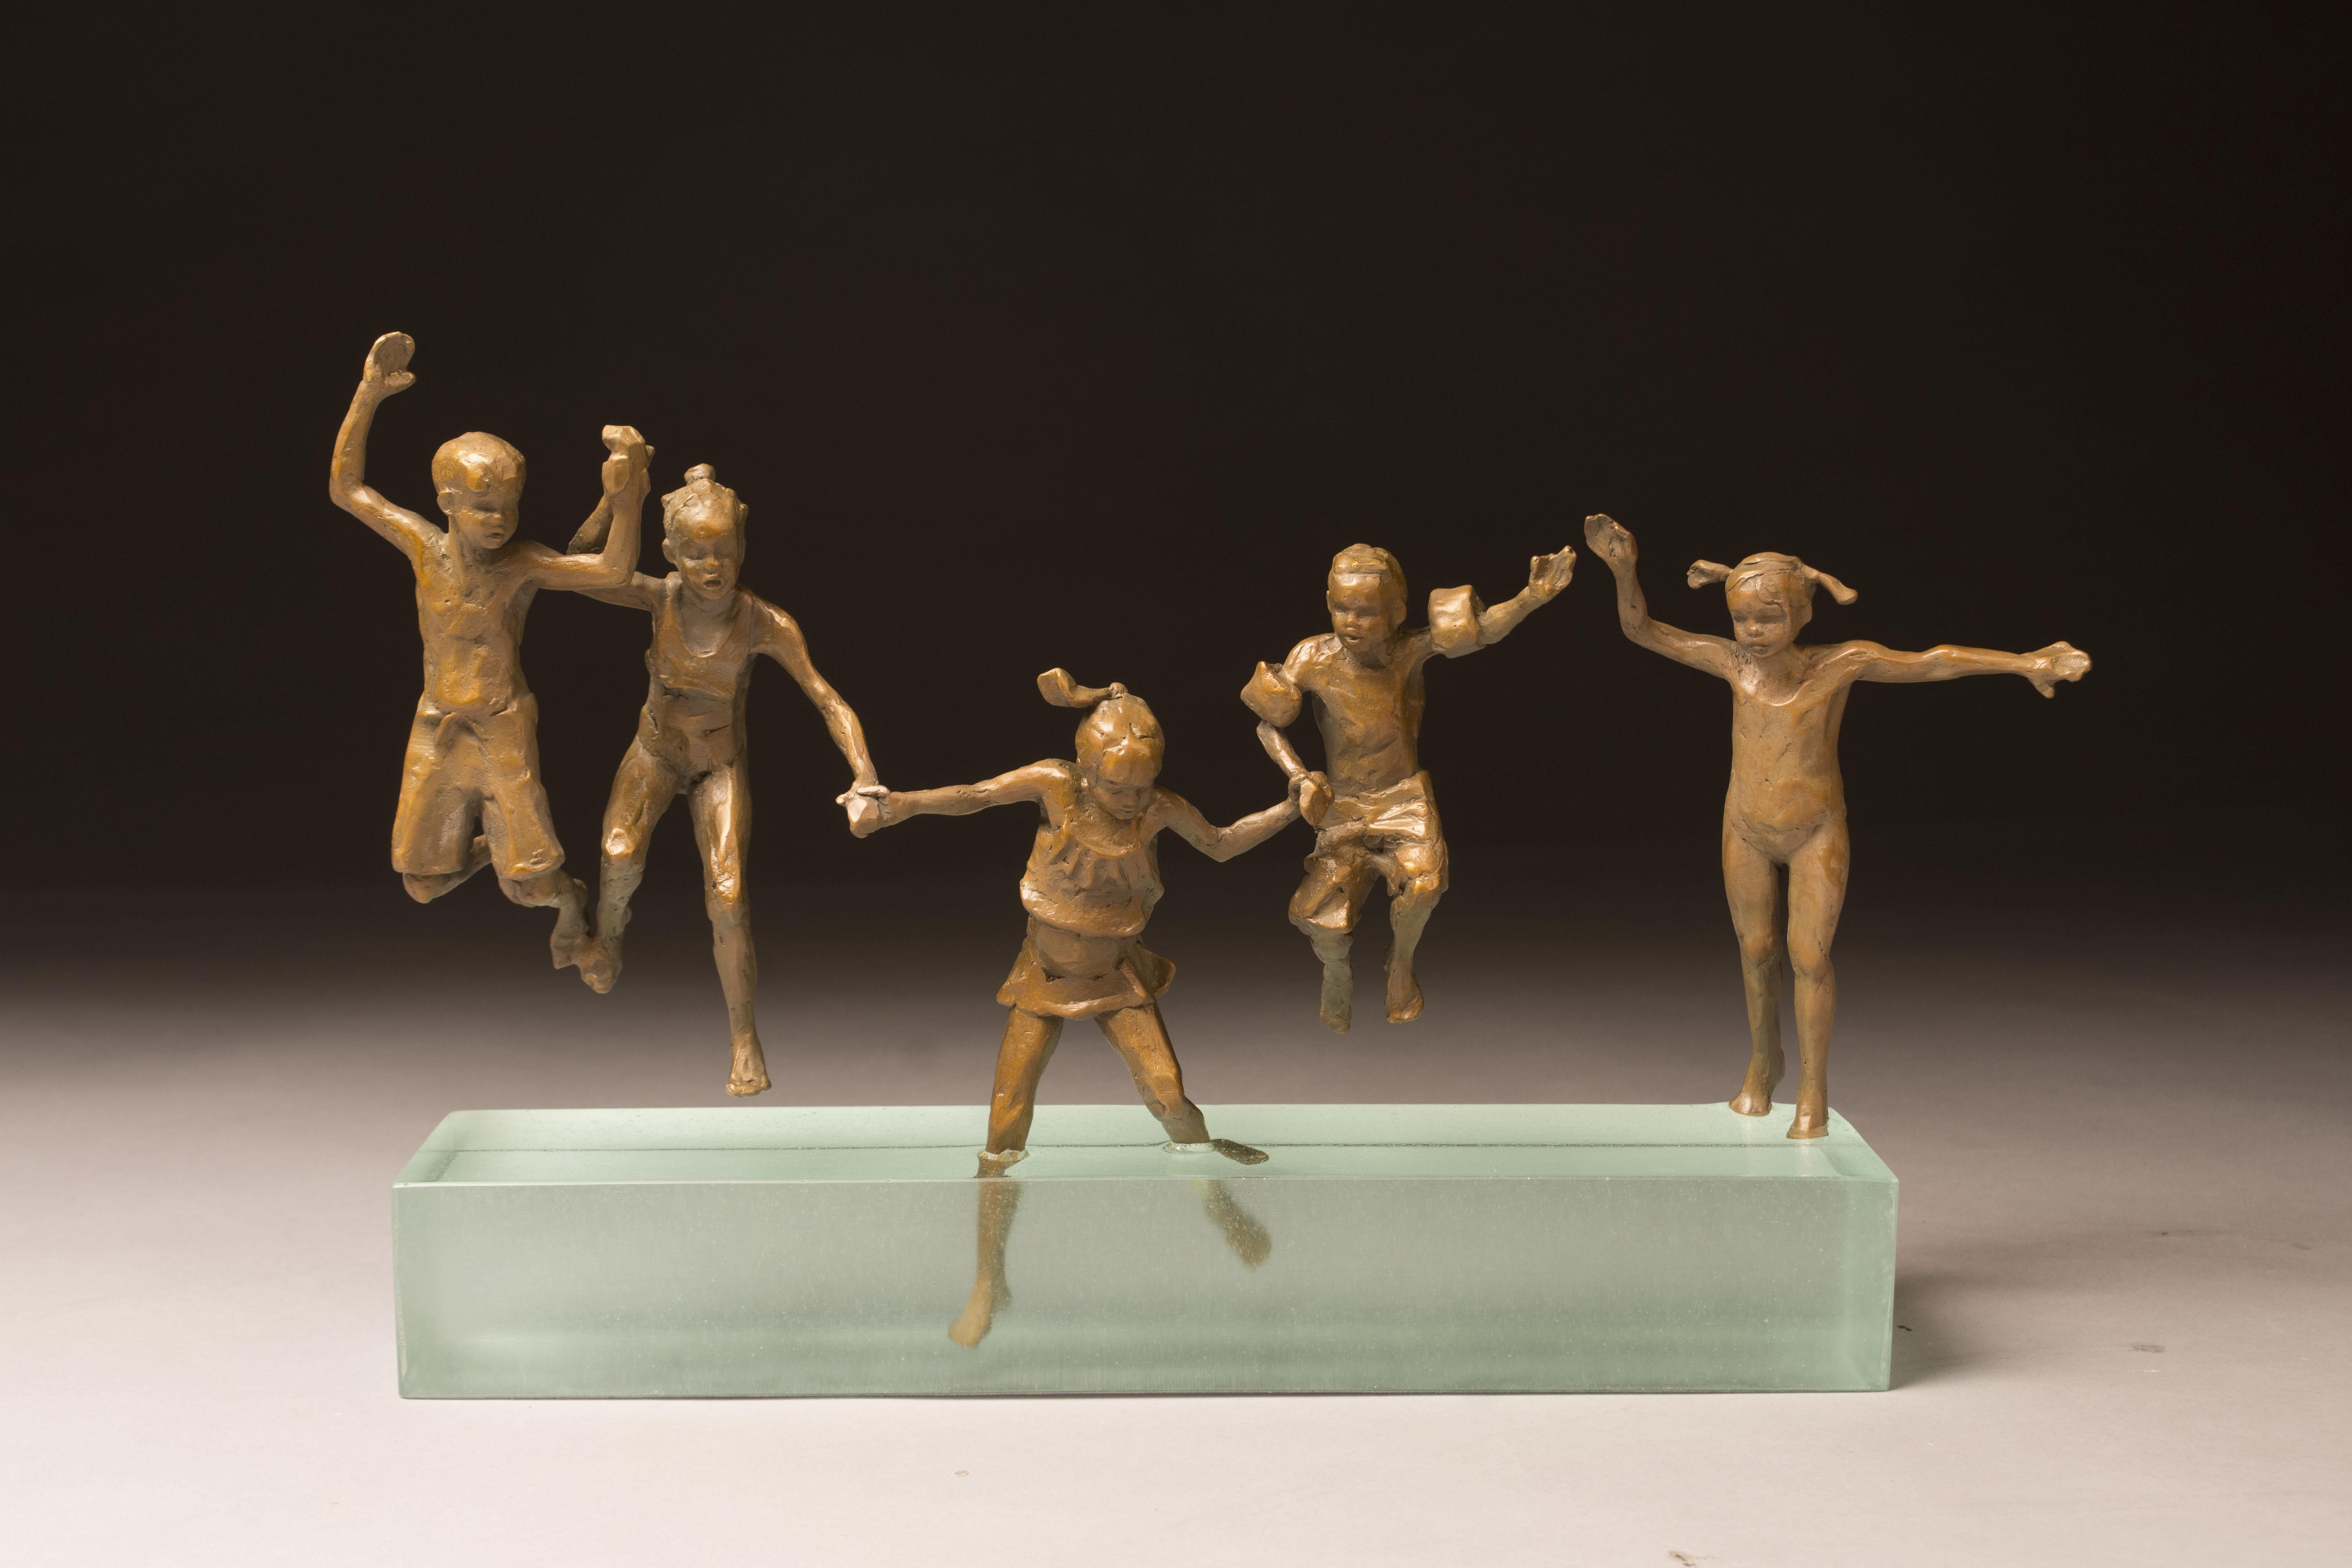 Clay Enoch Abstract Sculpture - Jump 9x15x3" bronze/resin sculpture